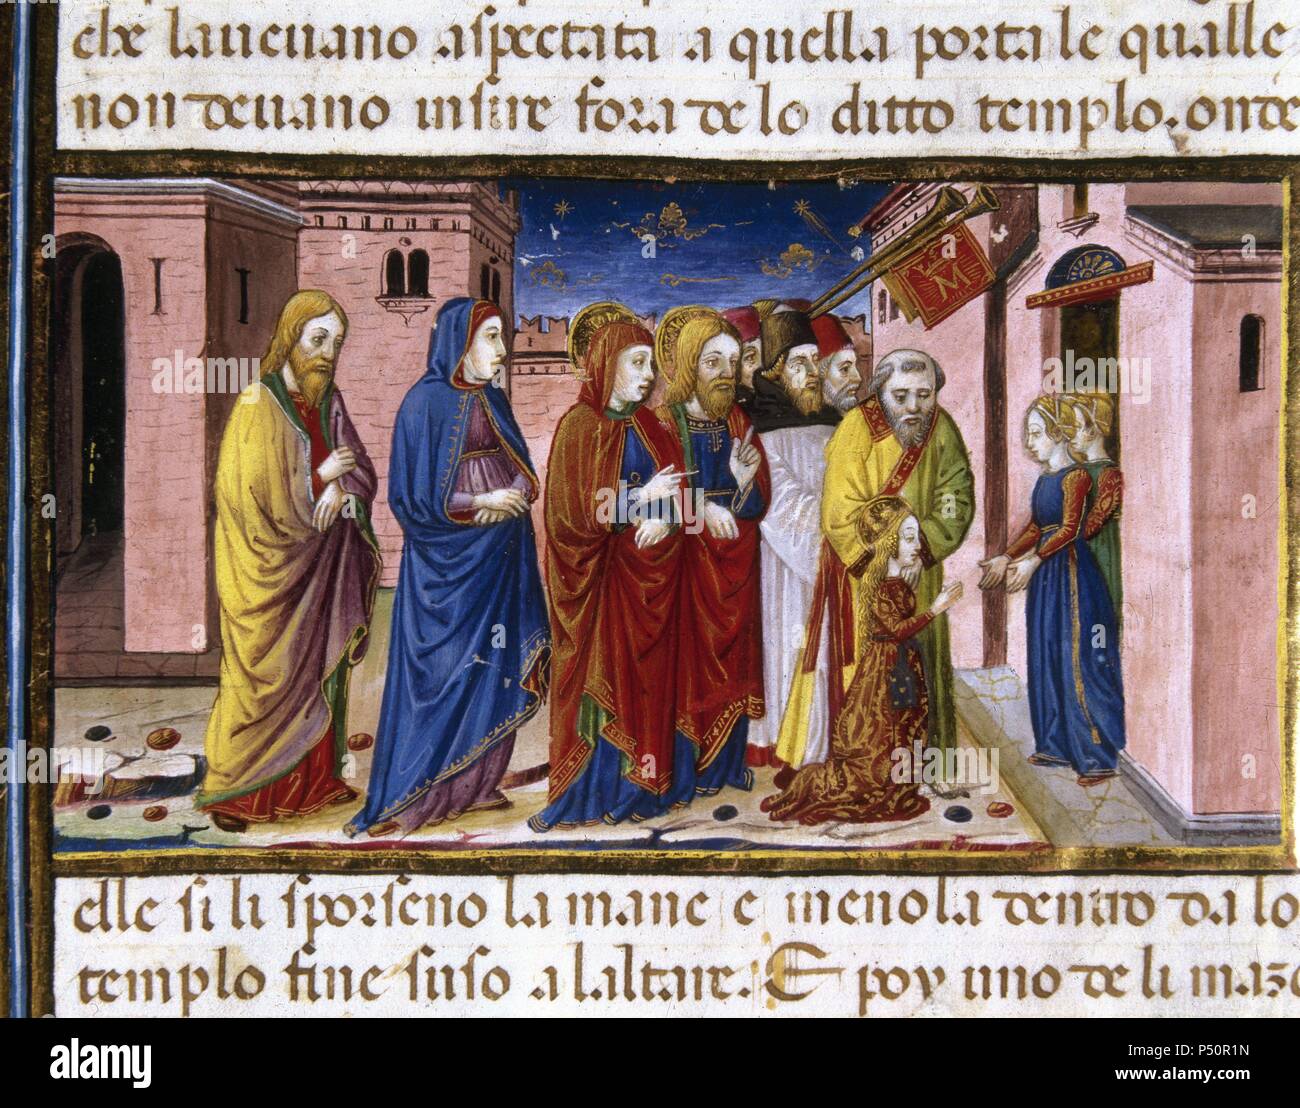 Maria ist bewirtet durch die jungfrauen der Tempel. Codex von Predis (1476). Königliche Bibliothek. Turin. Italien. Stockfoto